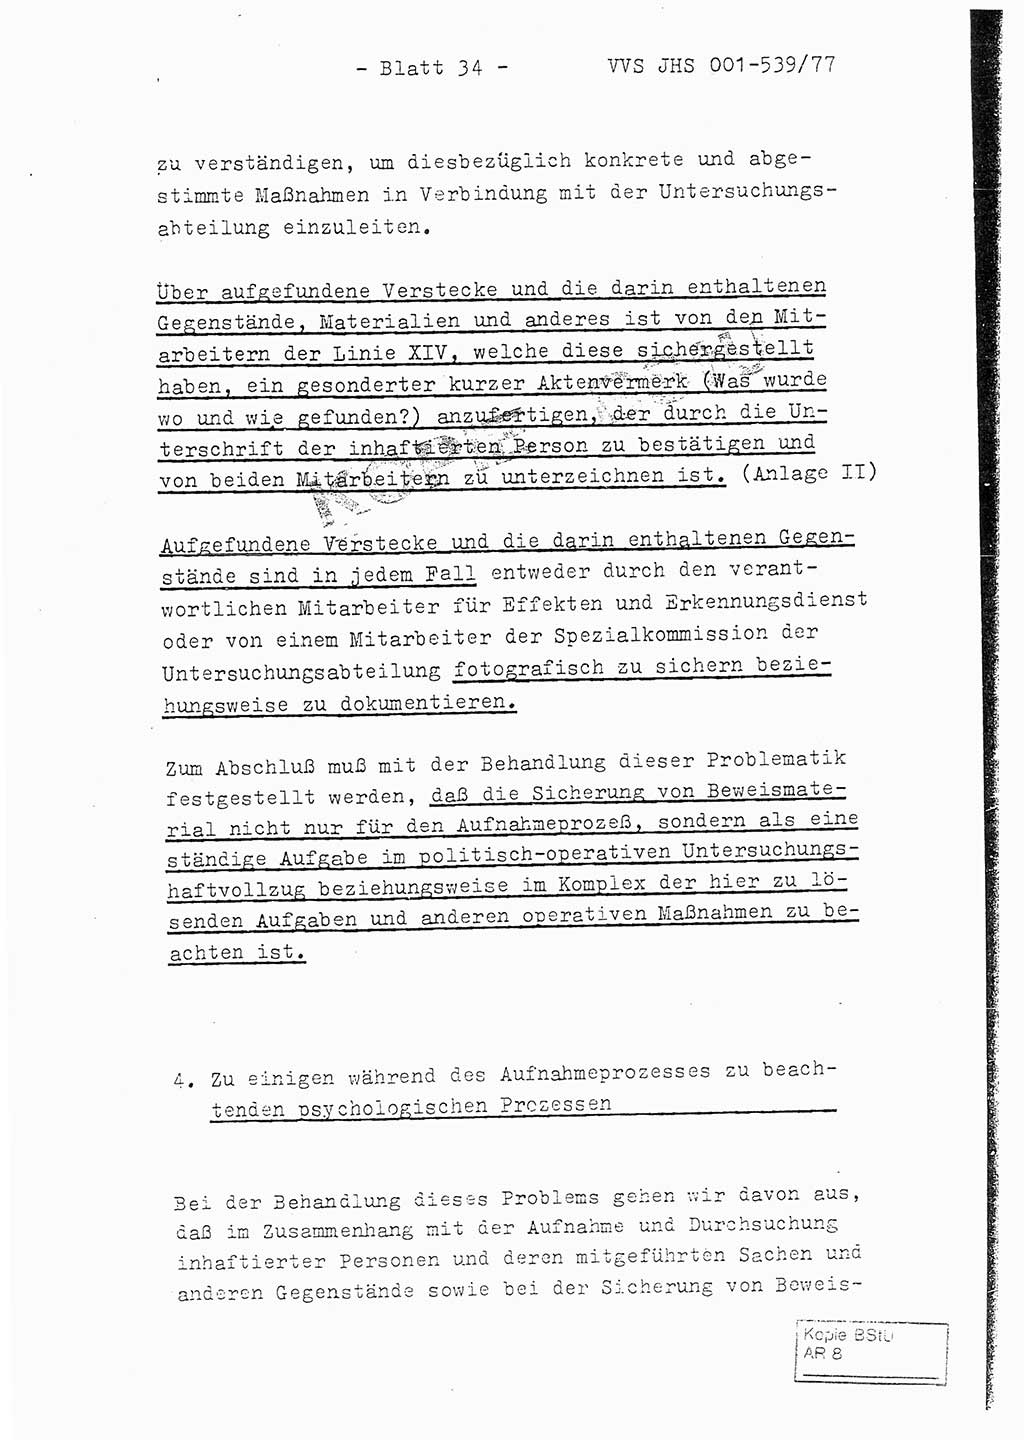 Fachschulabschlußarbeit Hauptmann Dietrich Jung (Abt. ⅩⅣ), Leutnant Klaus Klötzner (Abt. ⅩⅣ), Ministerium für Staatssicherheit (MfS) [Deutsche Demokratische Republik (DDR)], Juristische Hochschule (JHS), Vertrauliche Verschlußsache (VVS) 001-539/77, Potsdam 1978, Seite 34 (FS-Abschl.-Arb. MfS DDR JHS VVS 001-539/77 1978, S. 34)